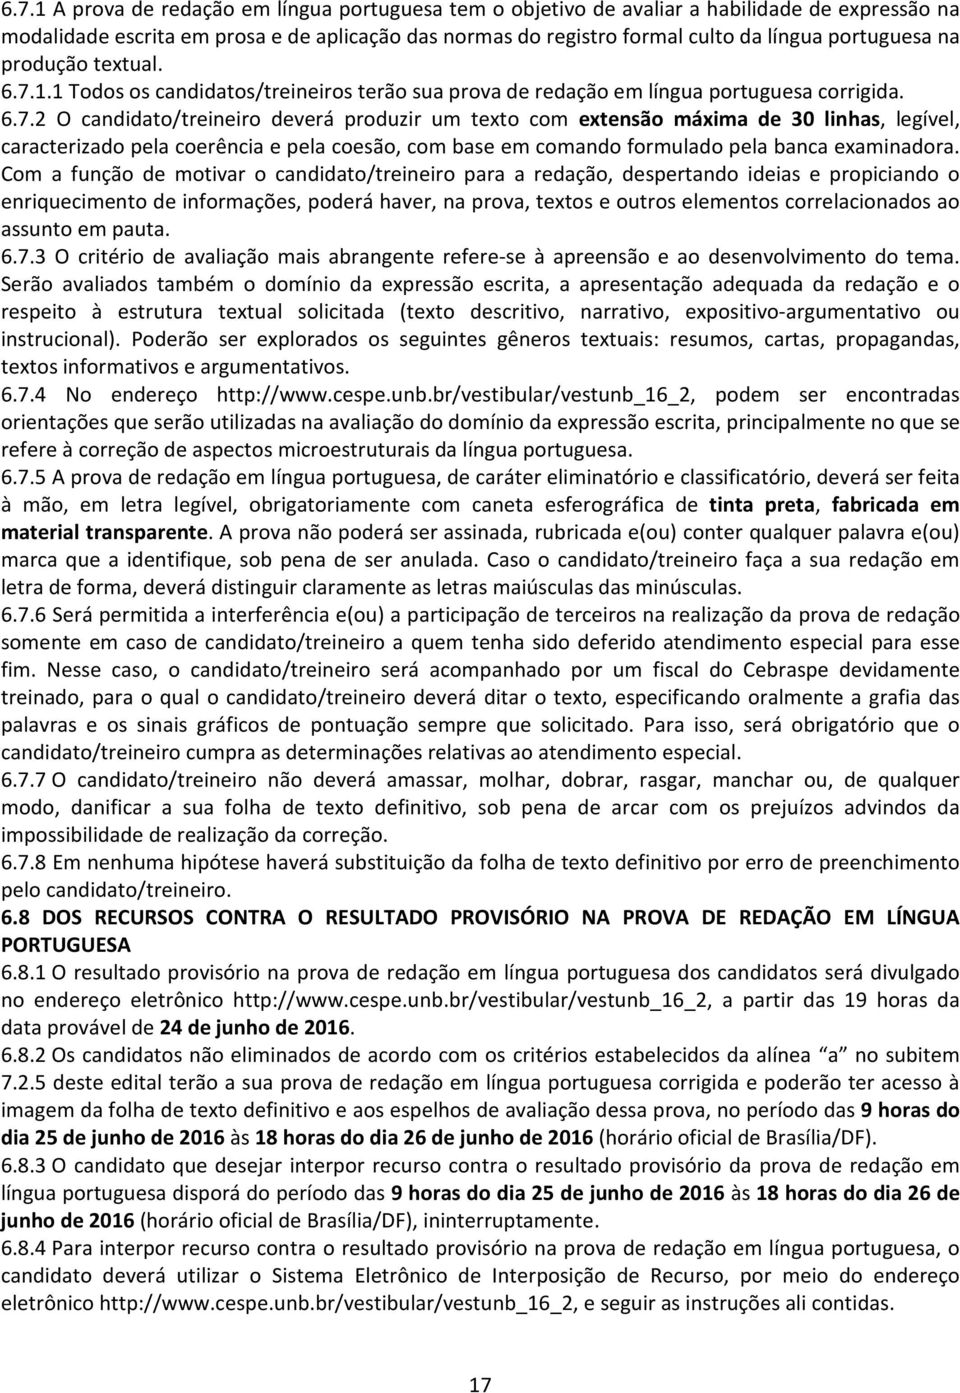 1.1 Todos os candidatos/treineiros terão sua prova de redação em língua portuguesa corrigida. 6.7.